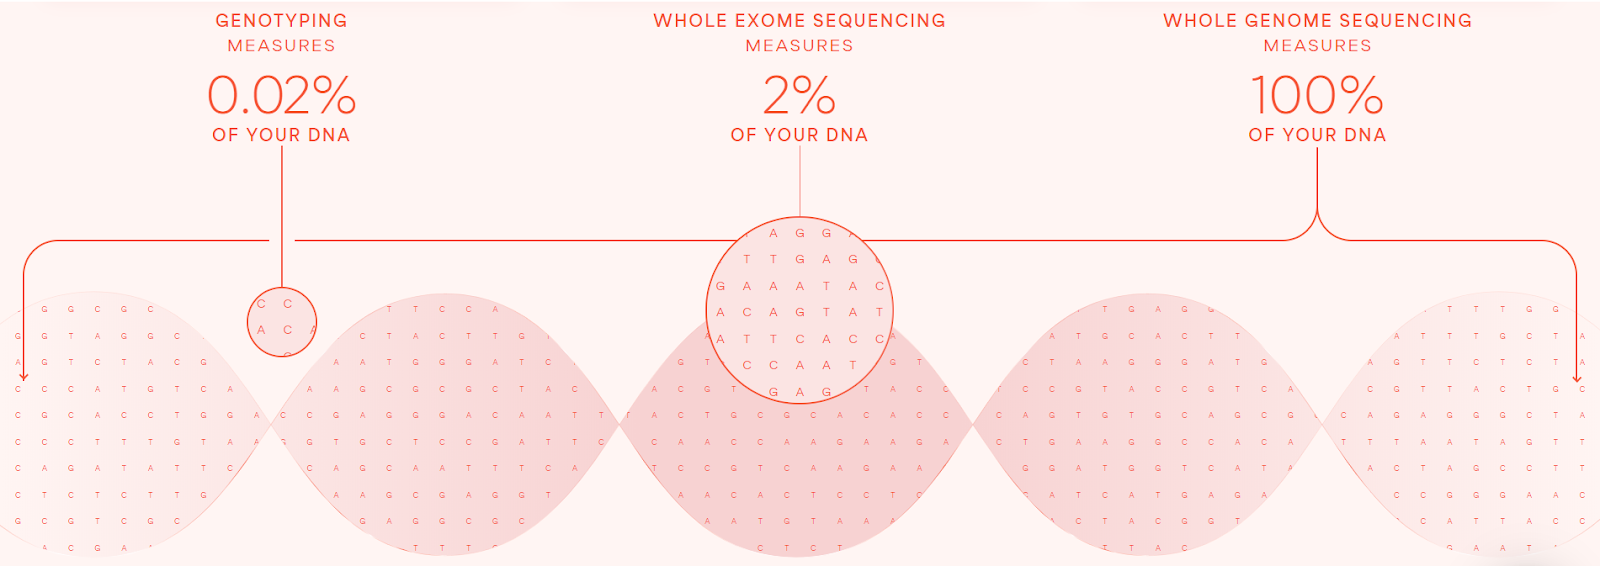 佐野ジェネティクスにおけるジェントタイピング、ホールエクソームシーケンス、ホールゲノムシーケンスで測定されたお客様のDNAの割合を示した図です。